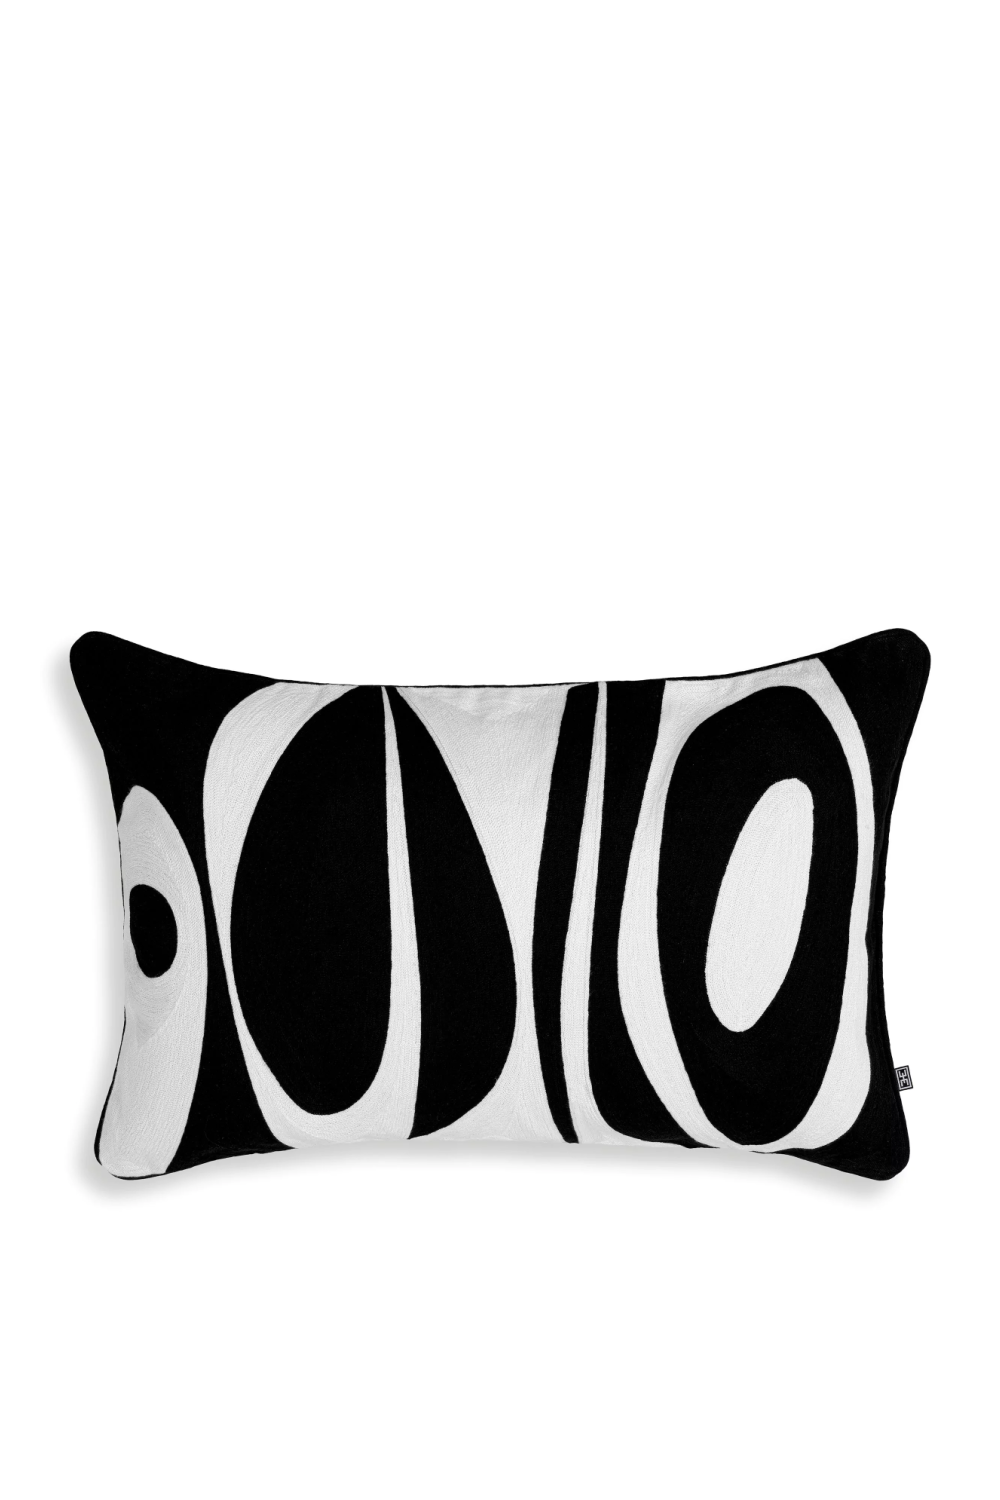 Contemporary Lumbar Pillow | Eichholtz Coura | Oroa.com